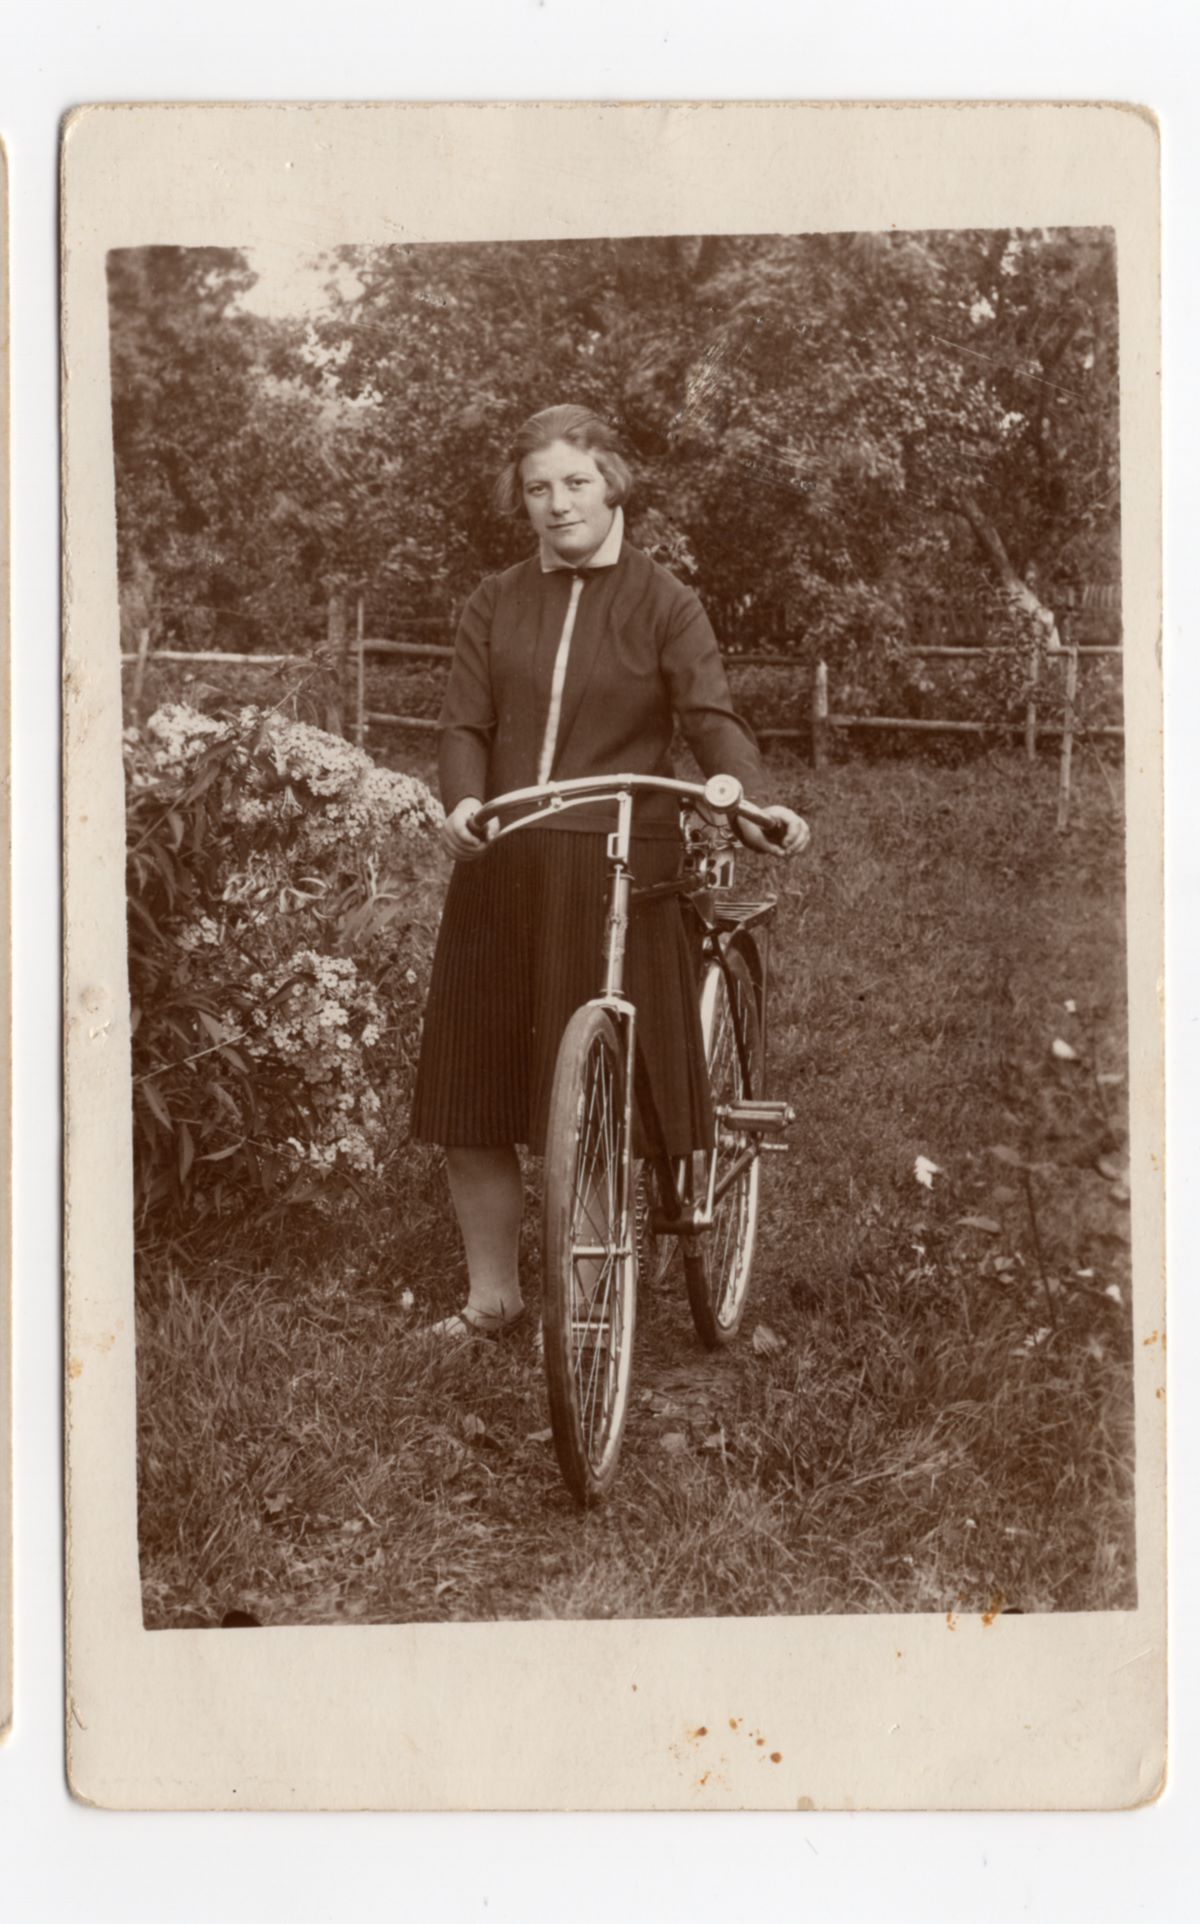 Sara Kravitz, 1927, Lithuania. Courtesy of Freda Lanesman.